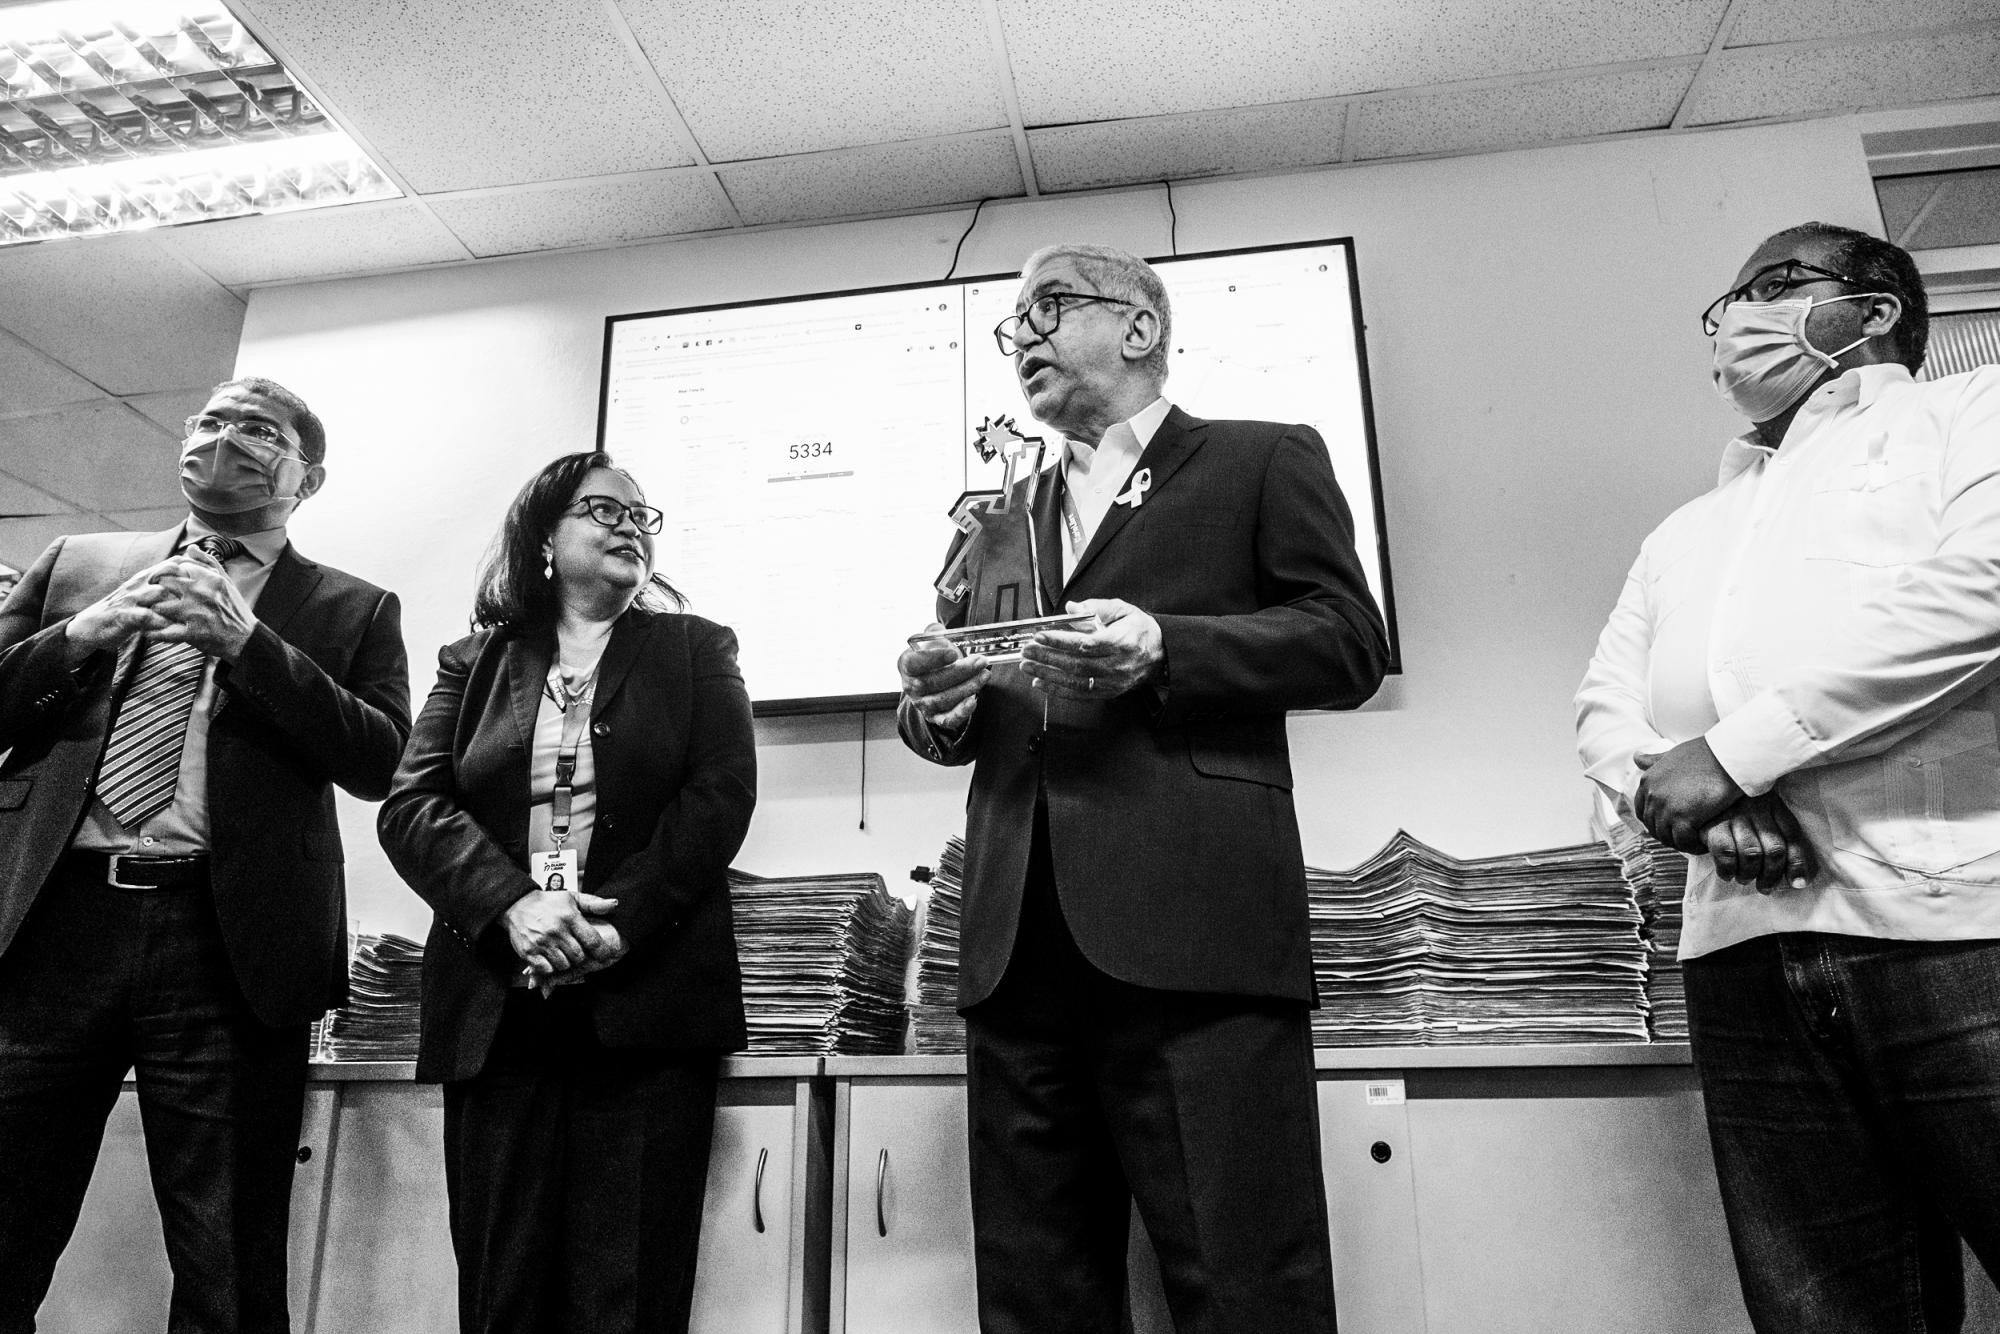 José María Reyes, Rosanna Figueroa y Omar Santana después de entregar la estatuilla de Diario Libre a don Adriano, en representación de todos los compañeros